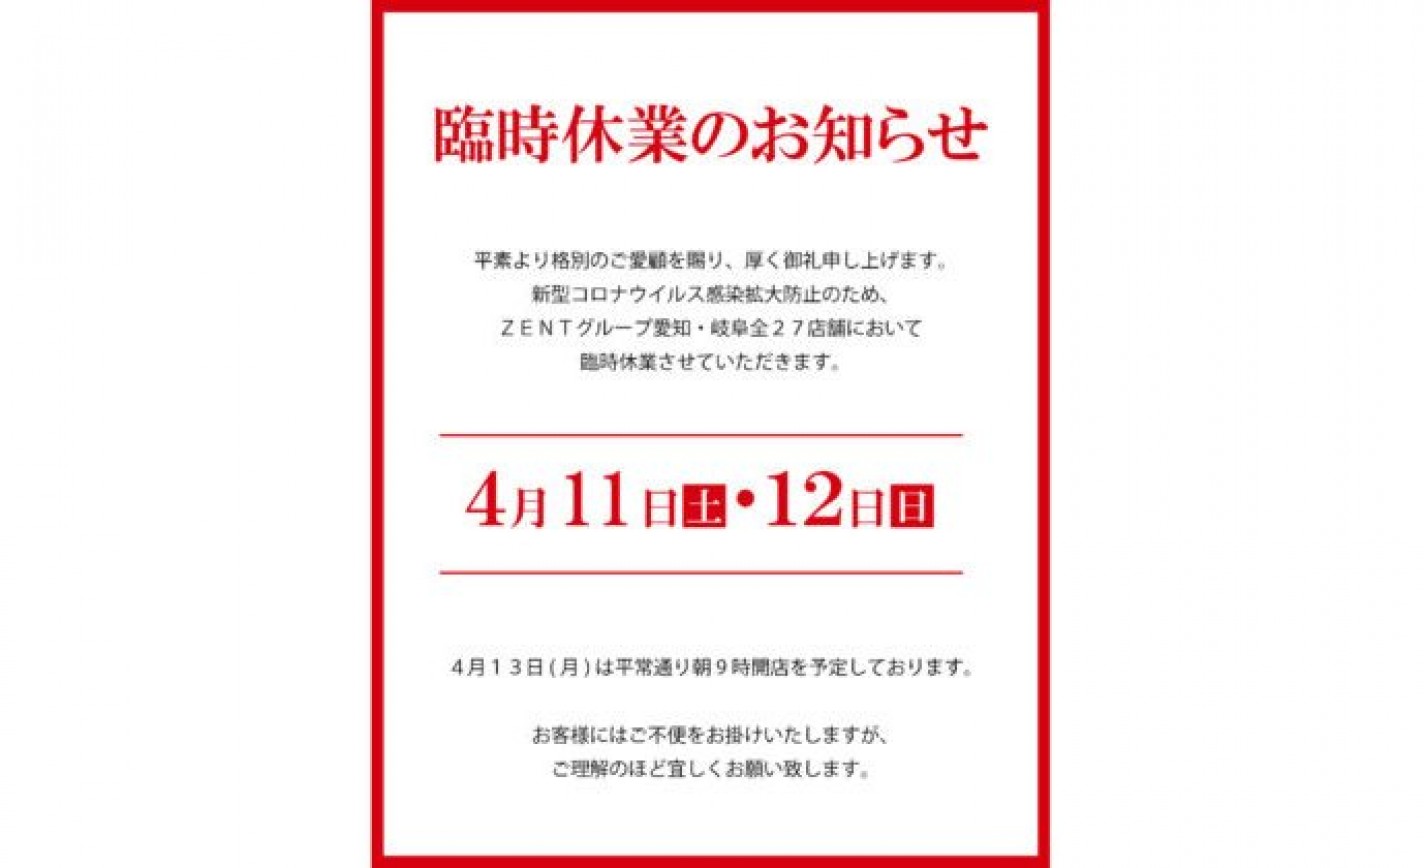 パチンコ《ZENT》、愛知と岐阜の全27店舗を臨時休業 eyecatch-image